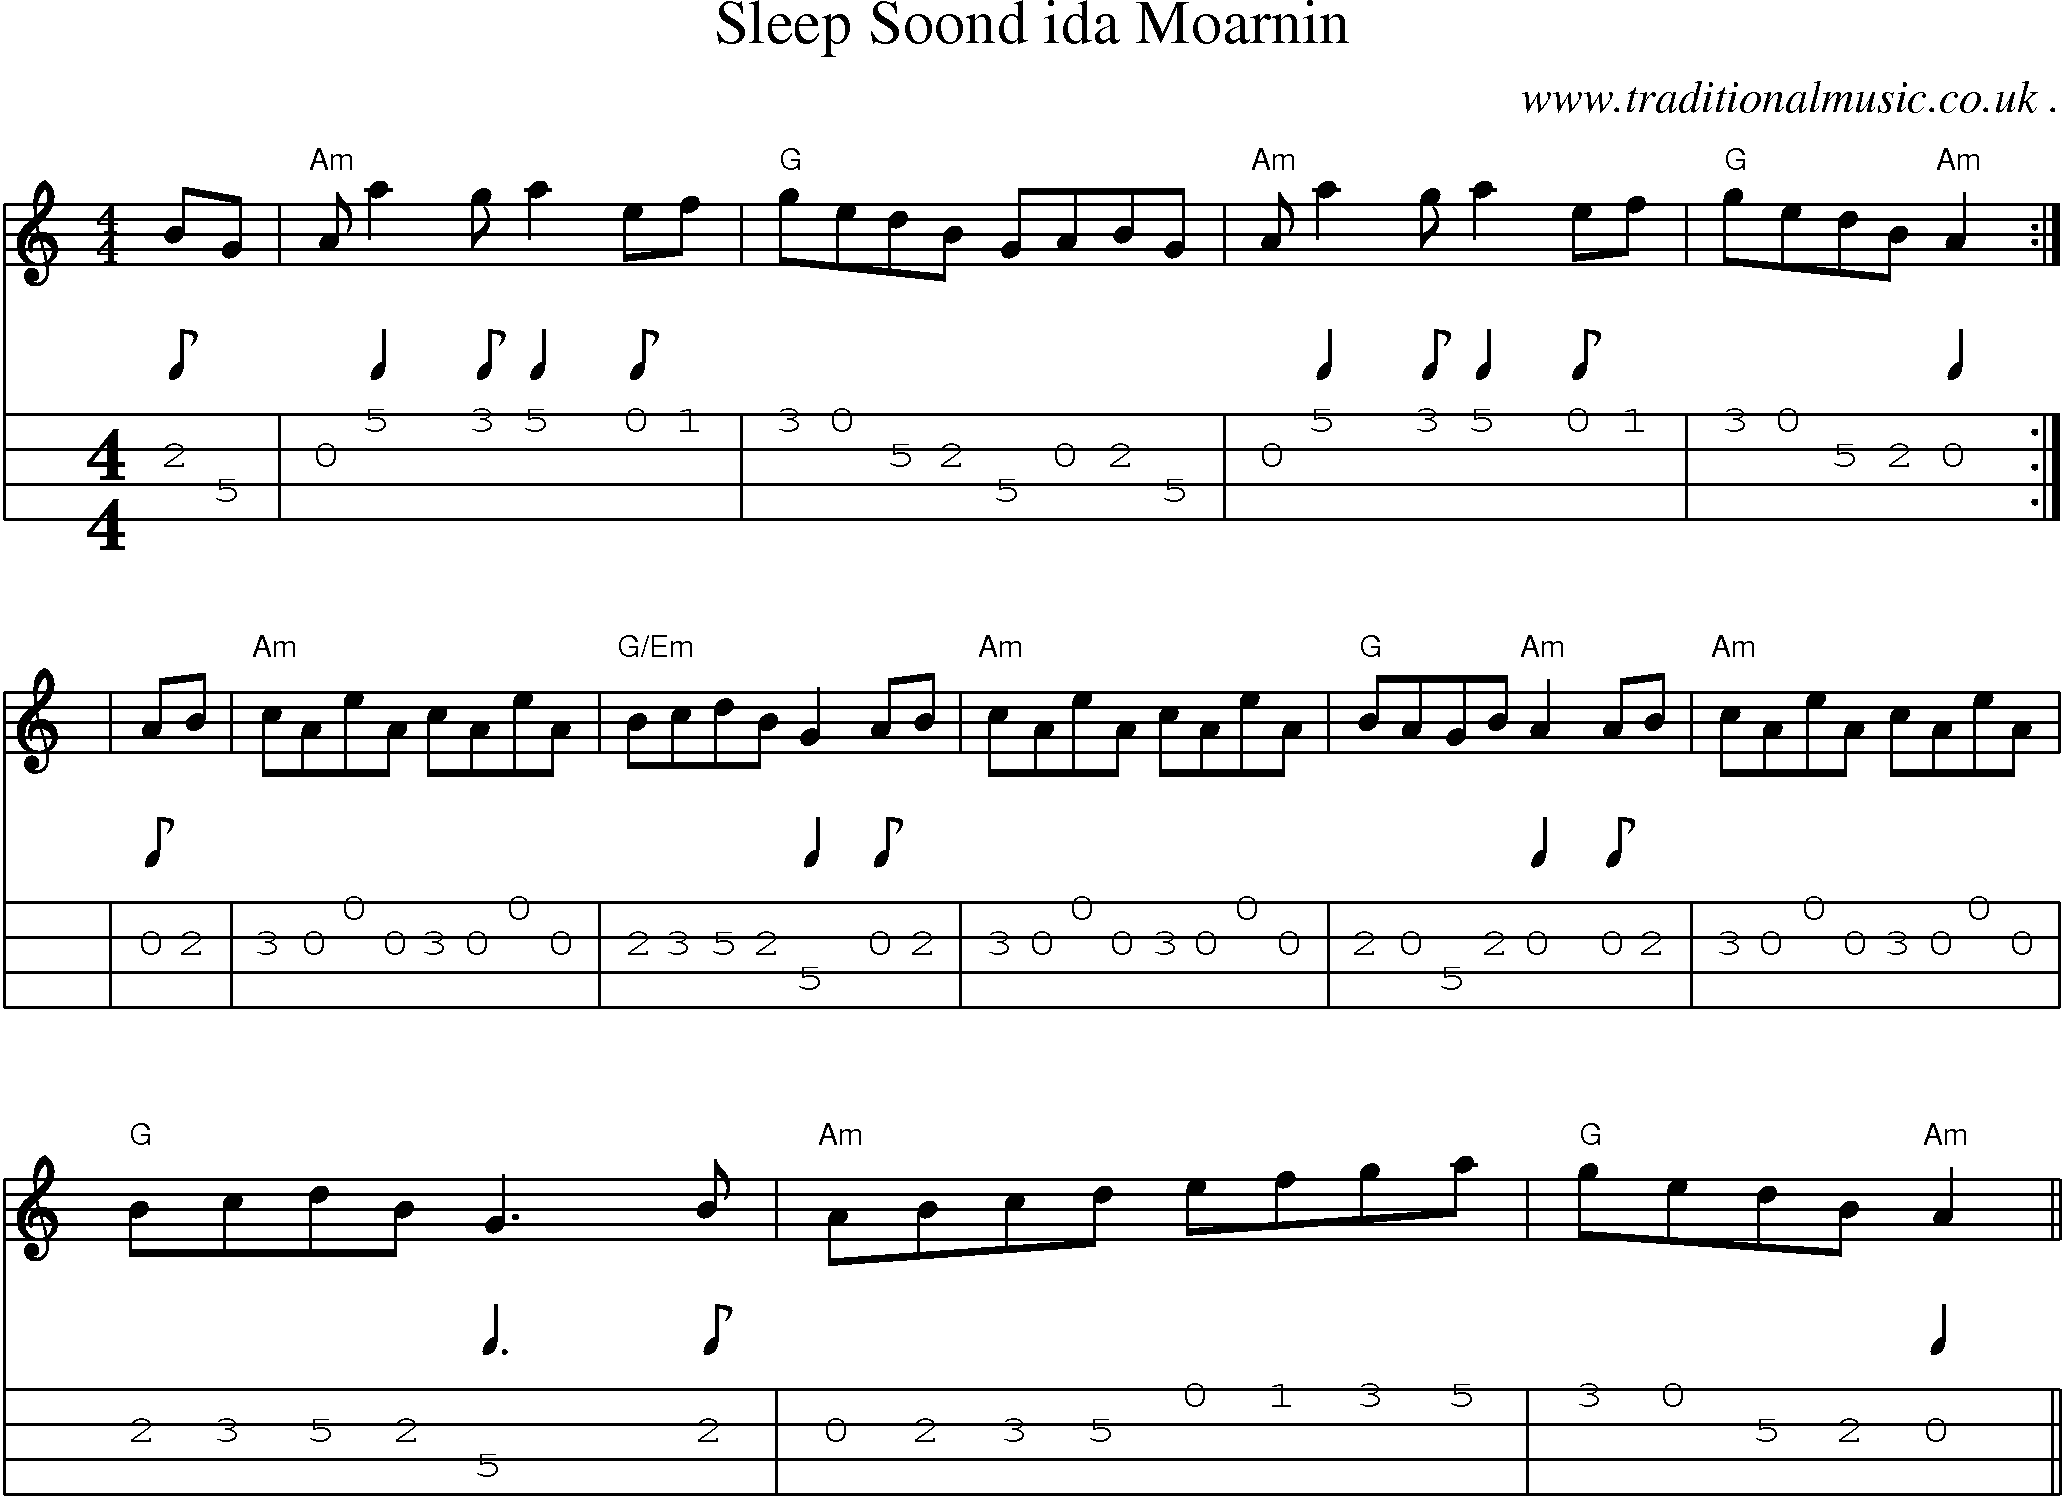 Sheet-Music and Mandolin Tabs for Sleep Soond Ida Moarnin